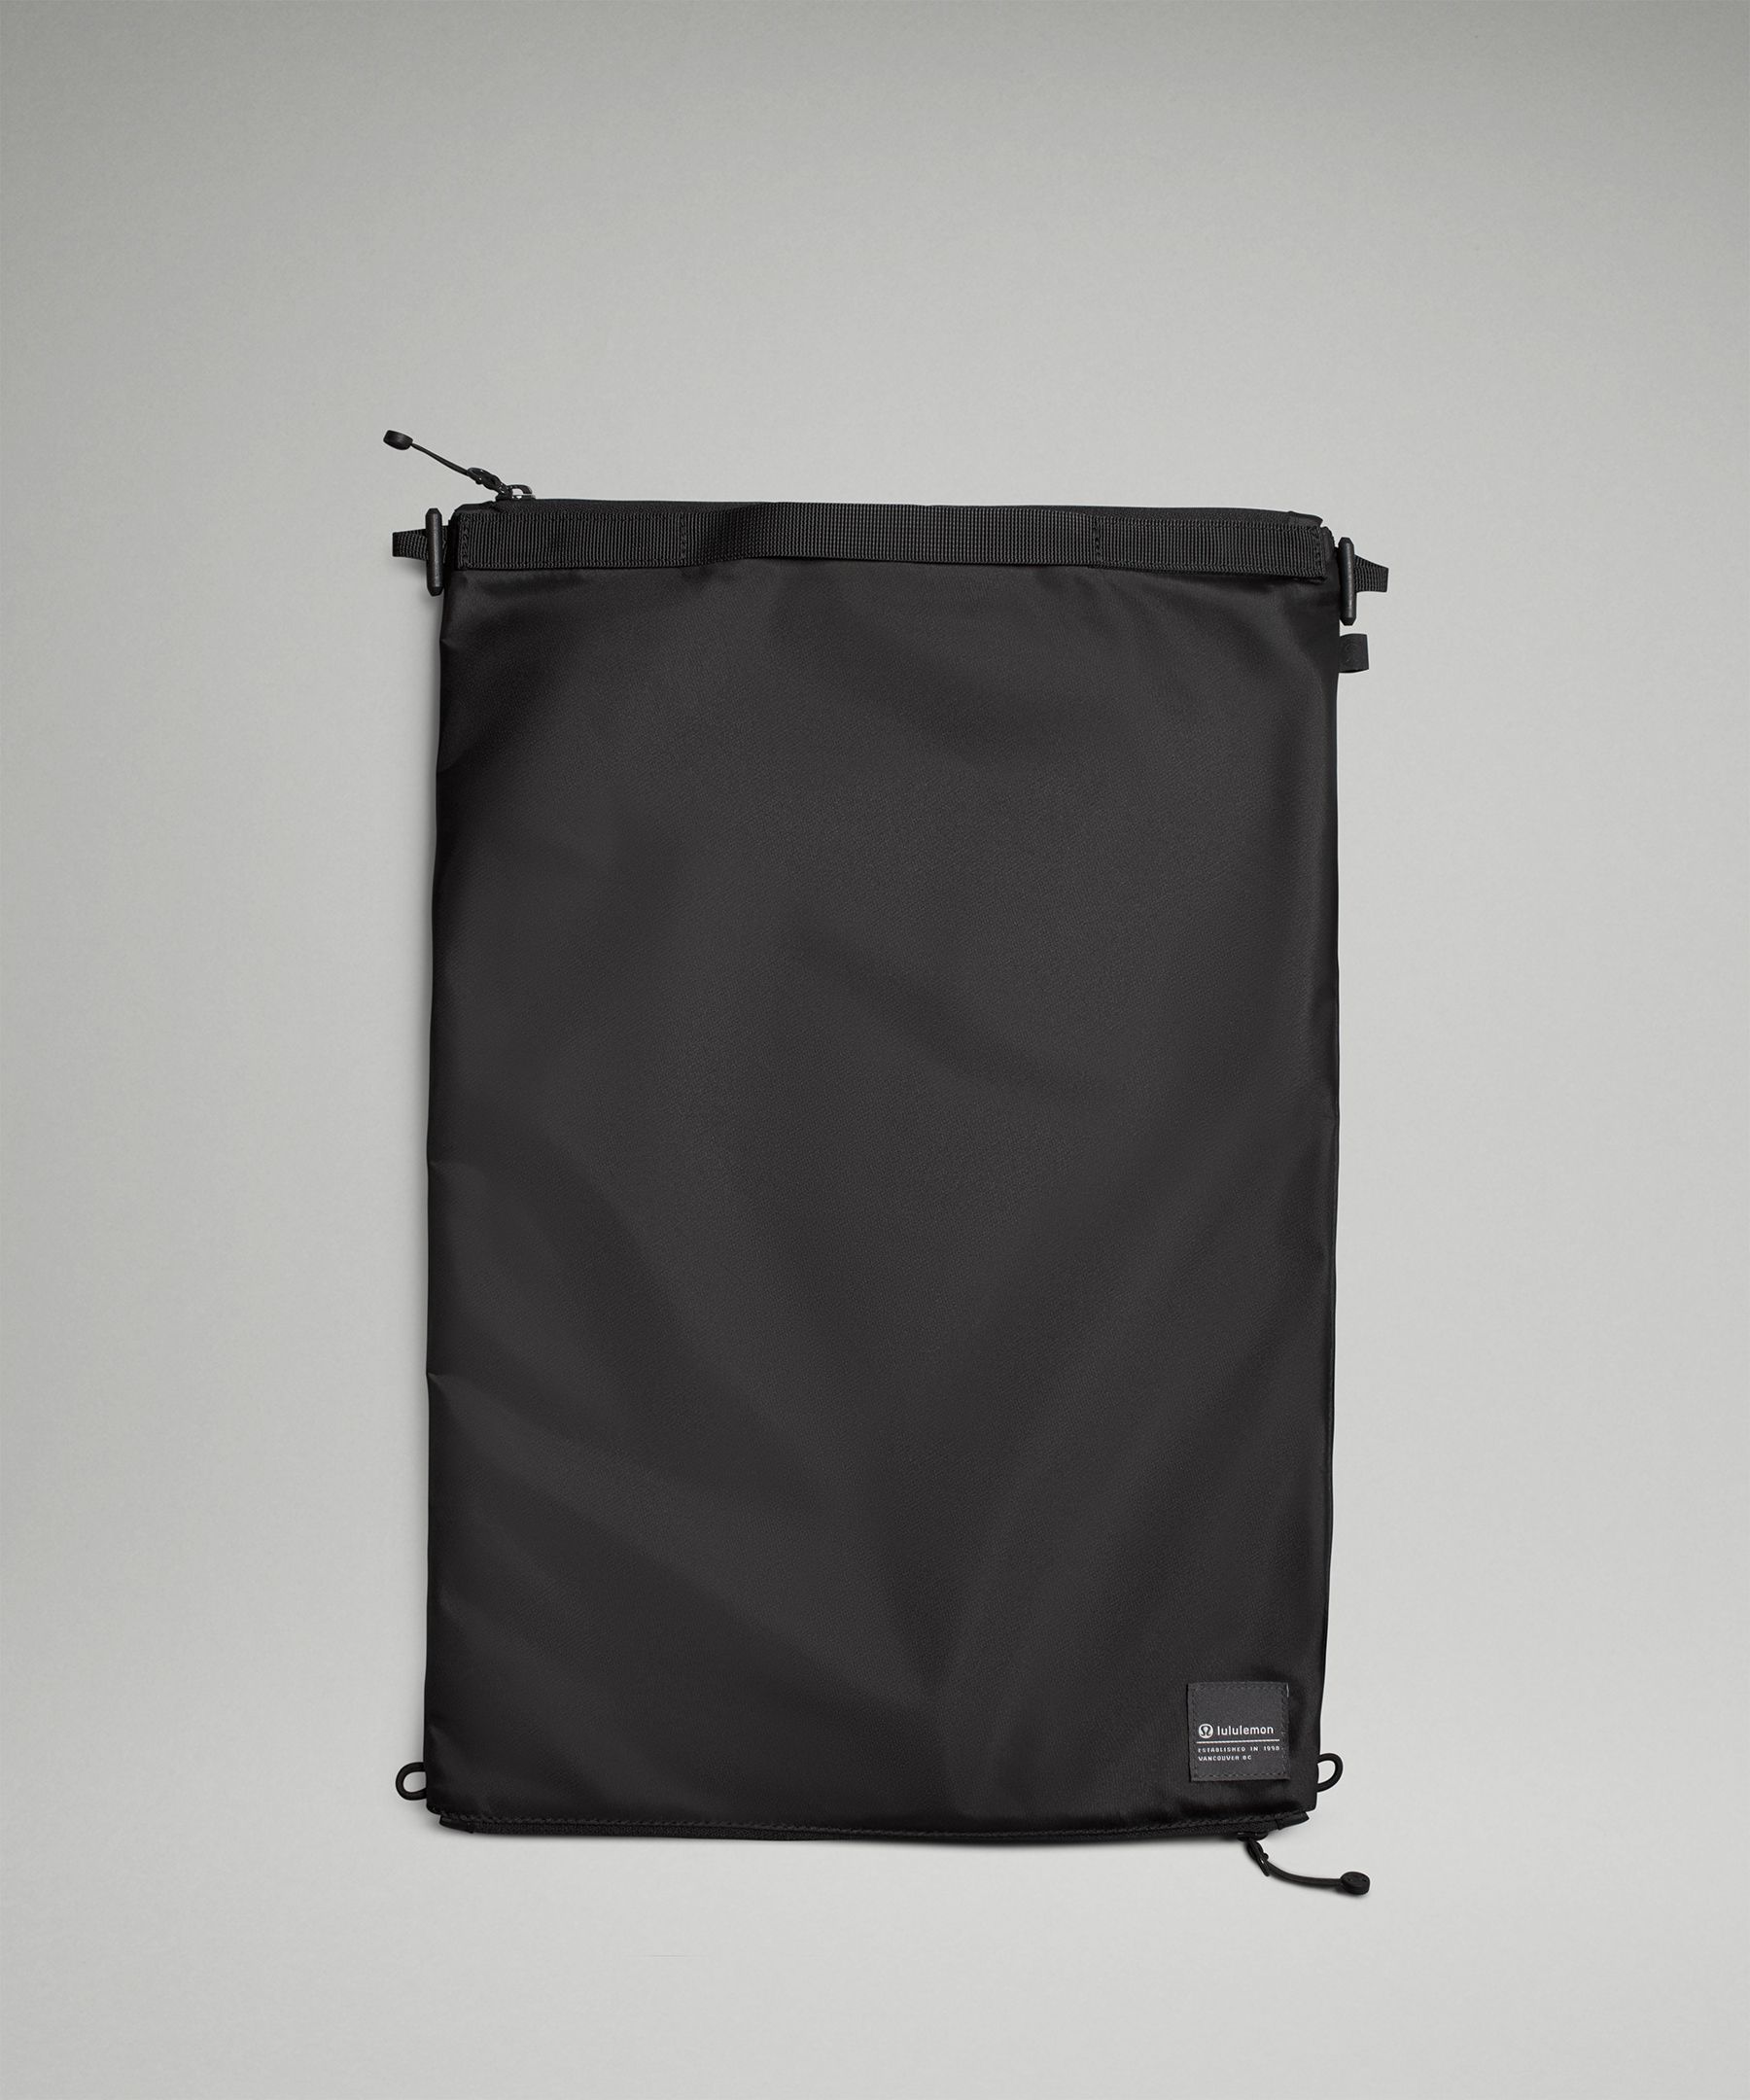 Lululemon Travel Laundry Bag In Black